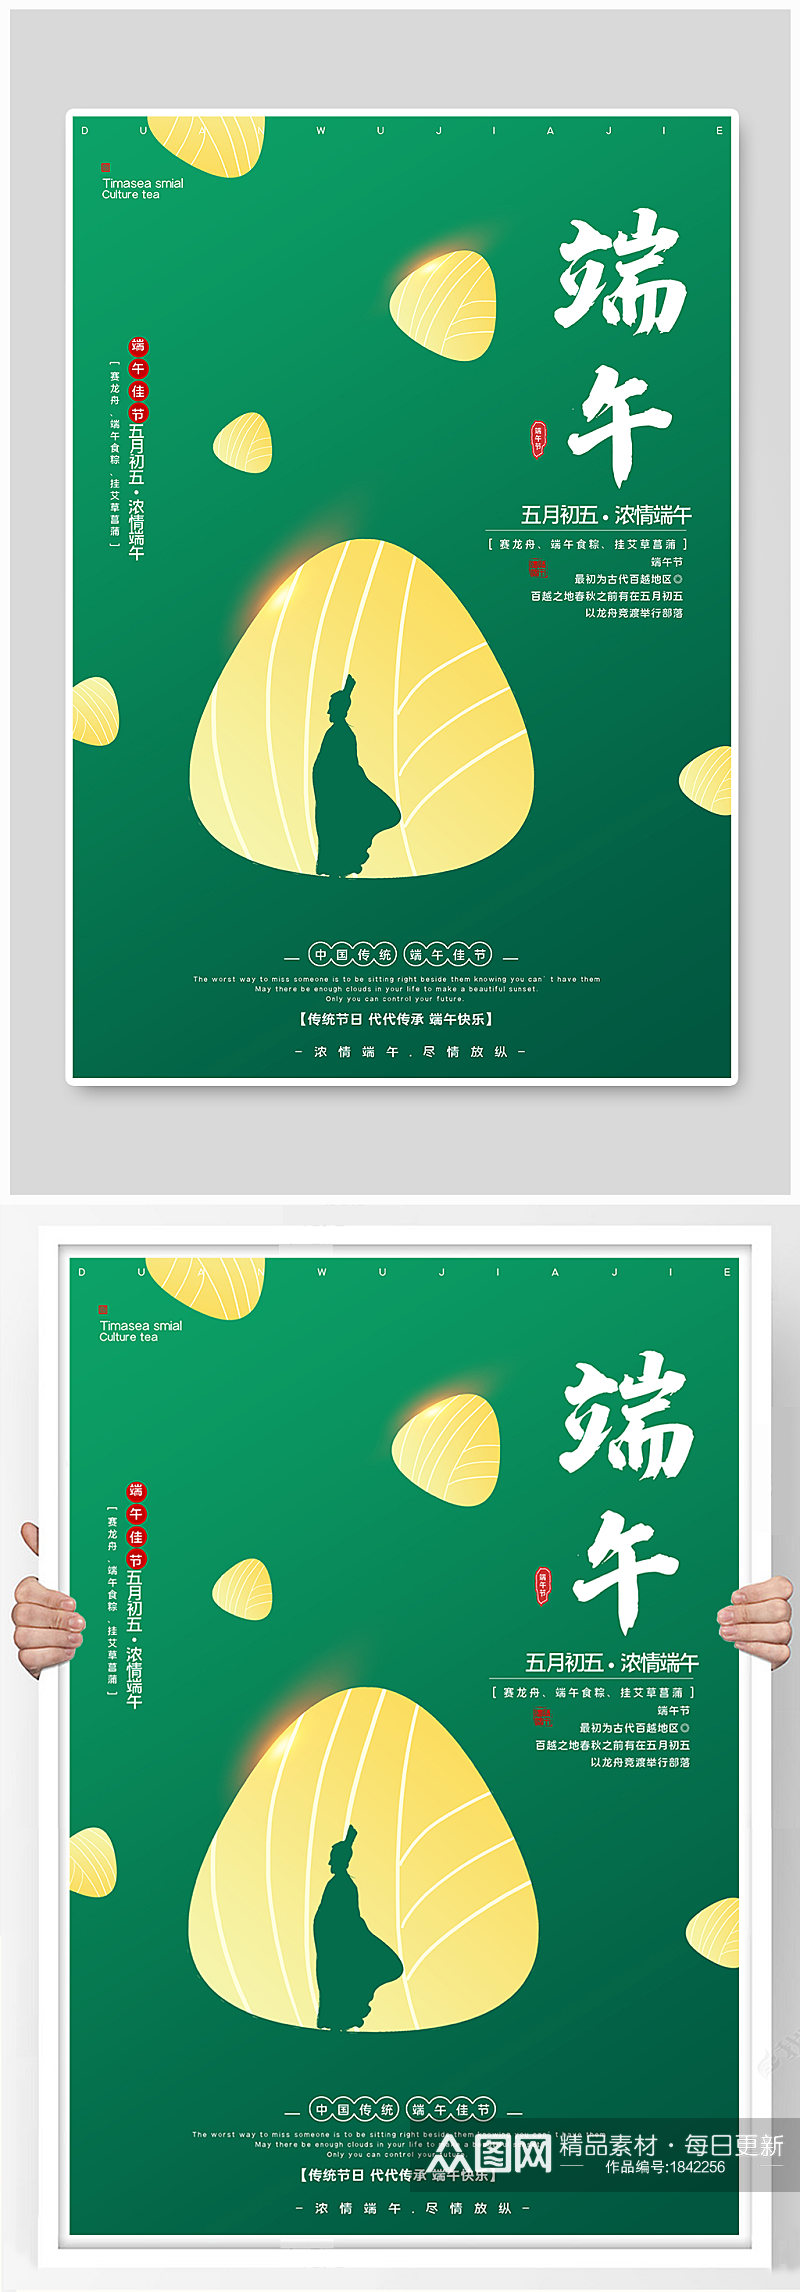 传统节日文化端午节活动海报素材